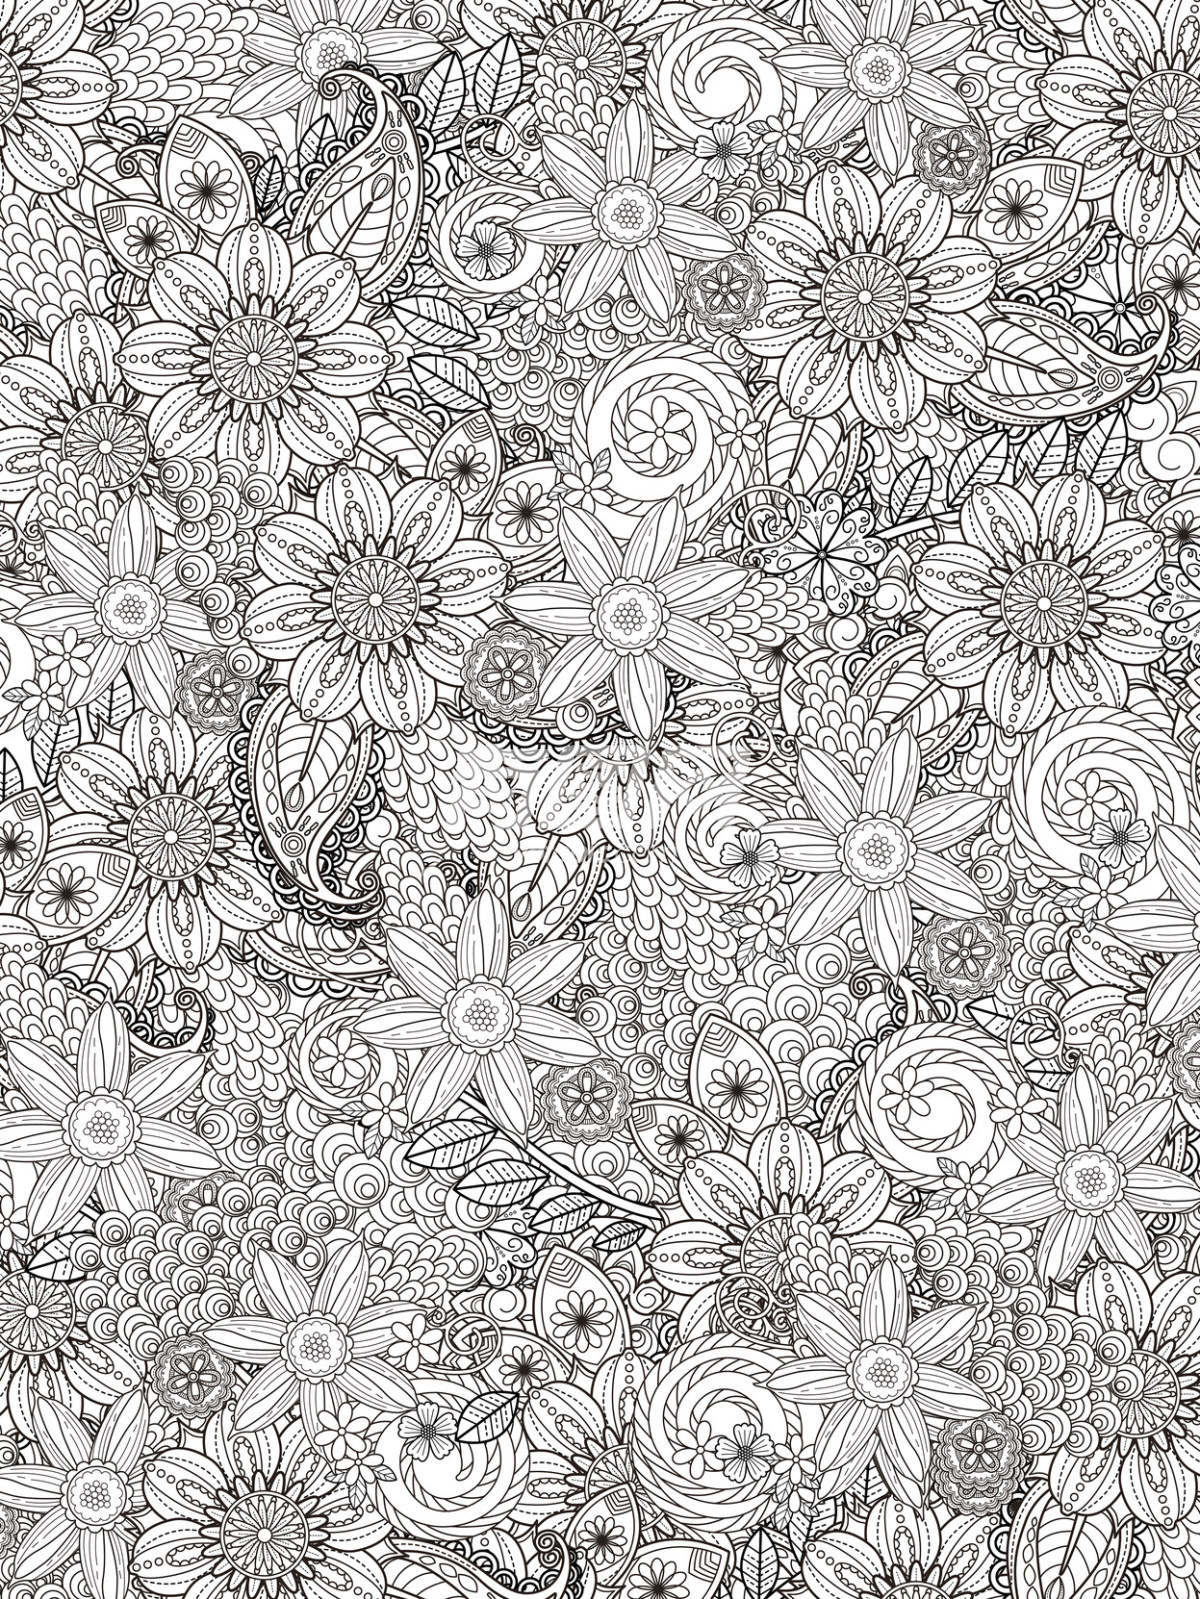 黑白花卉图案